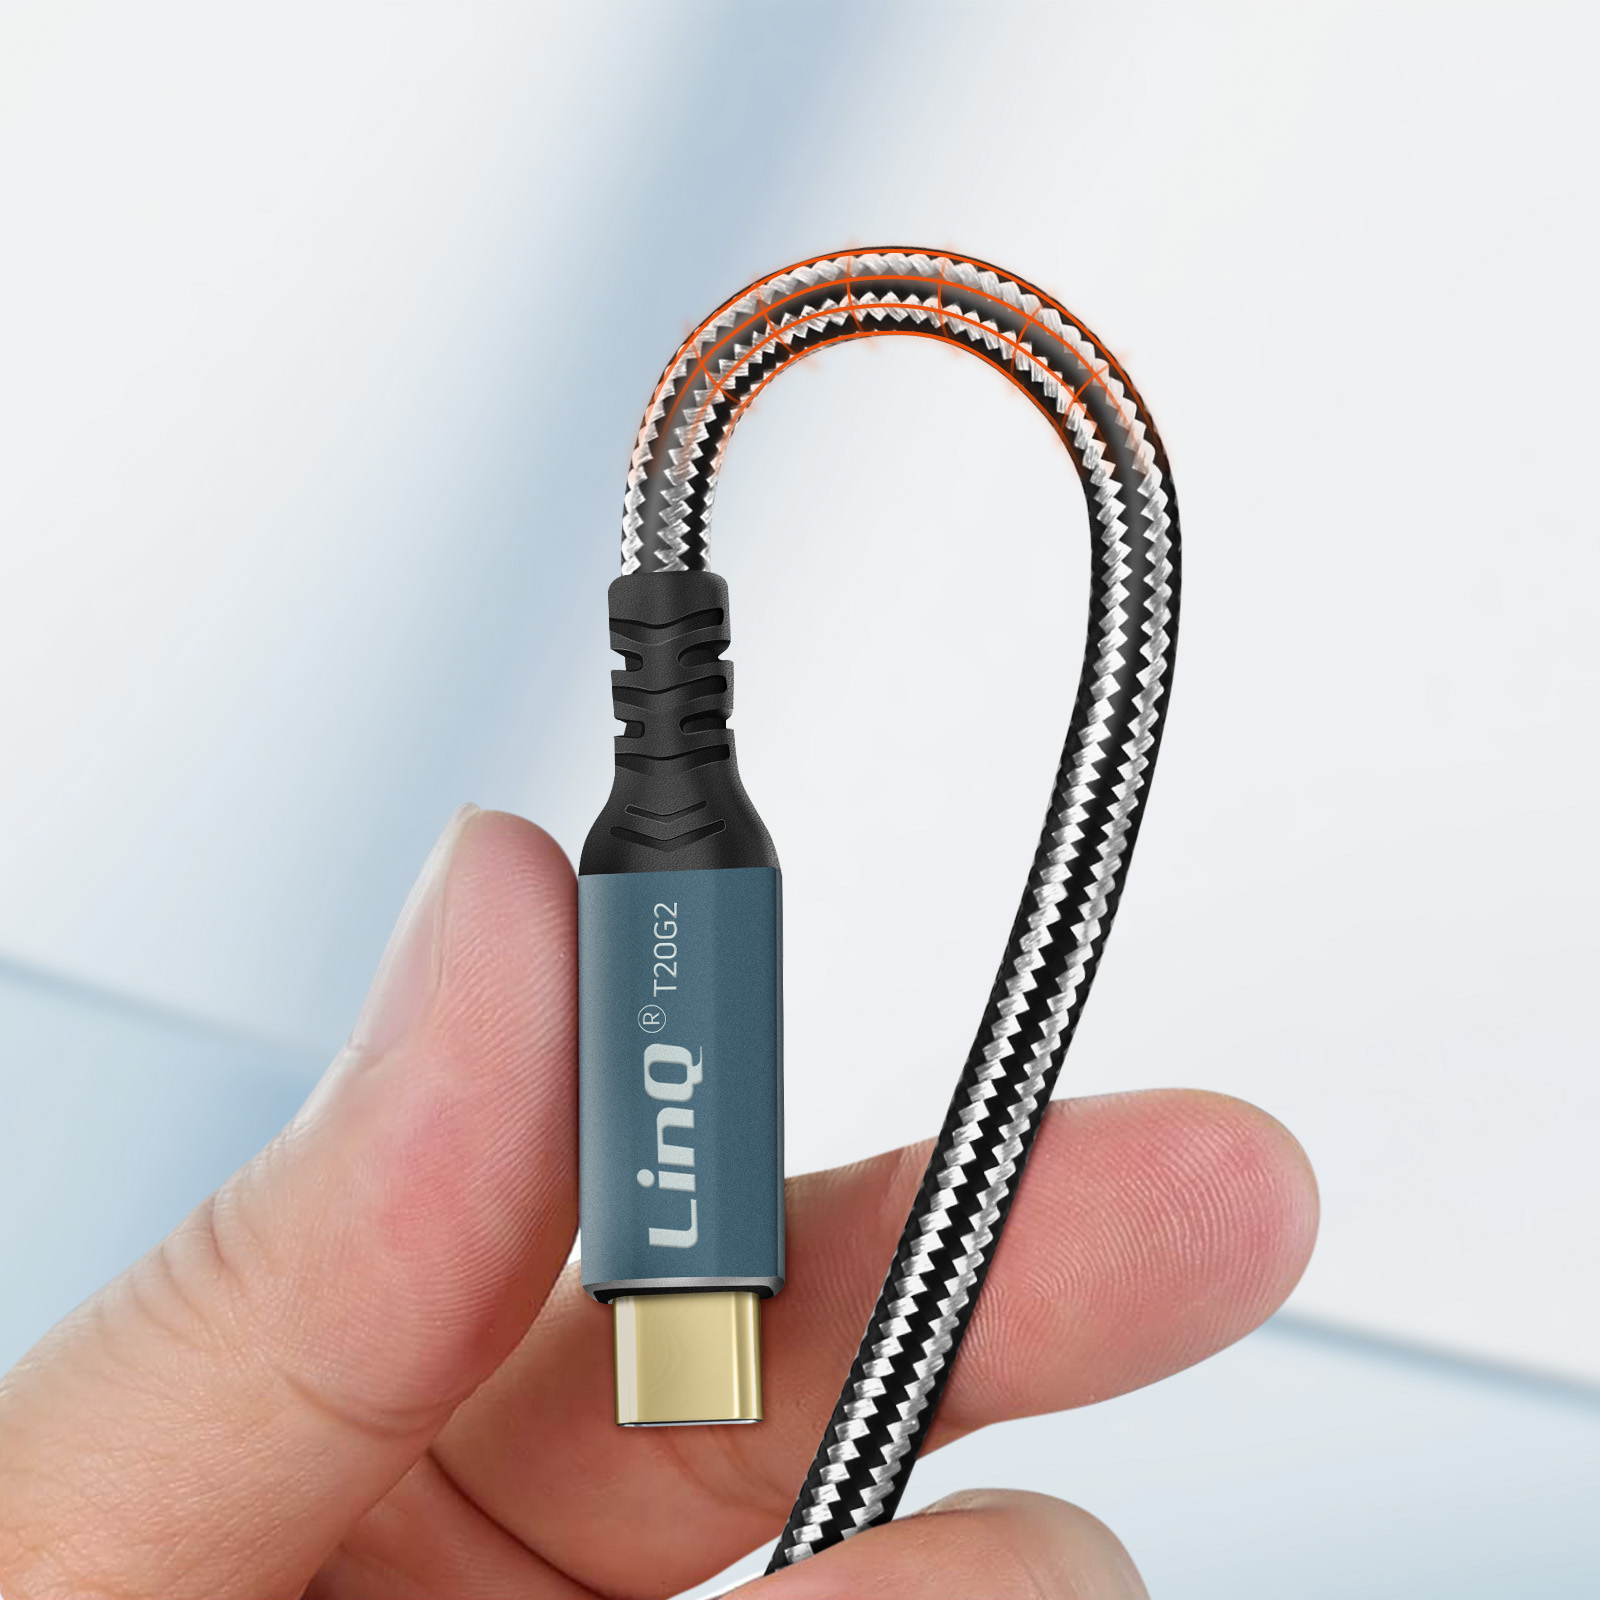 Rallonge USB-C 2m, Charge 100W Résolution 8K Transfert 20Gbps - LinQ -  Français